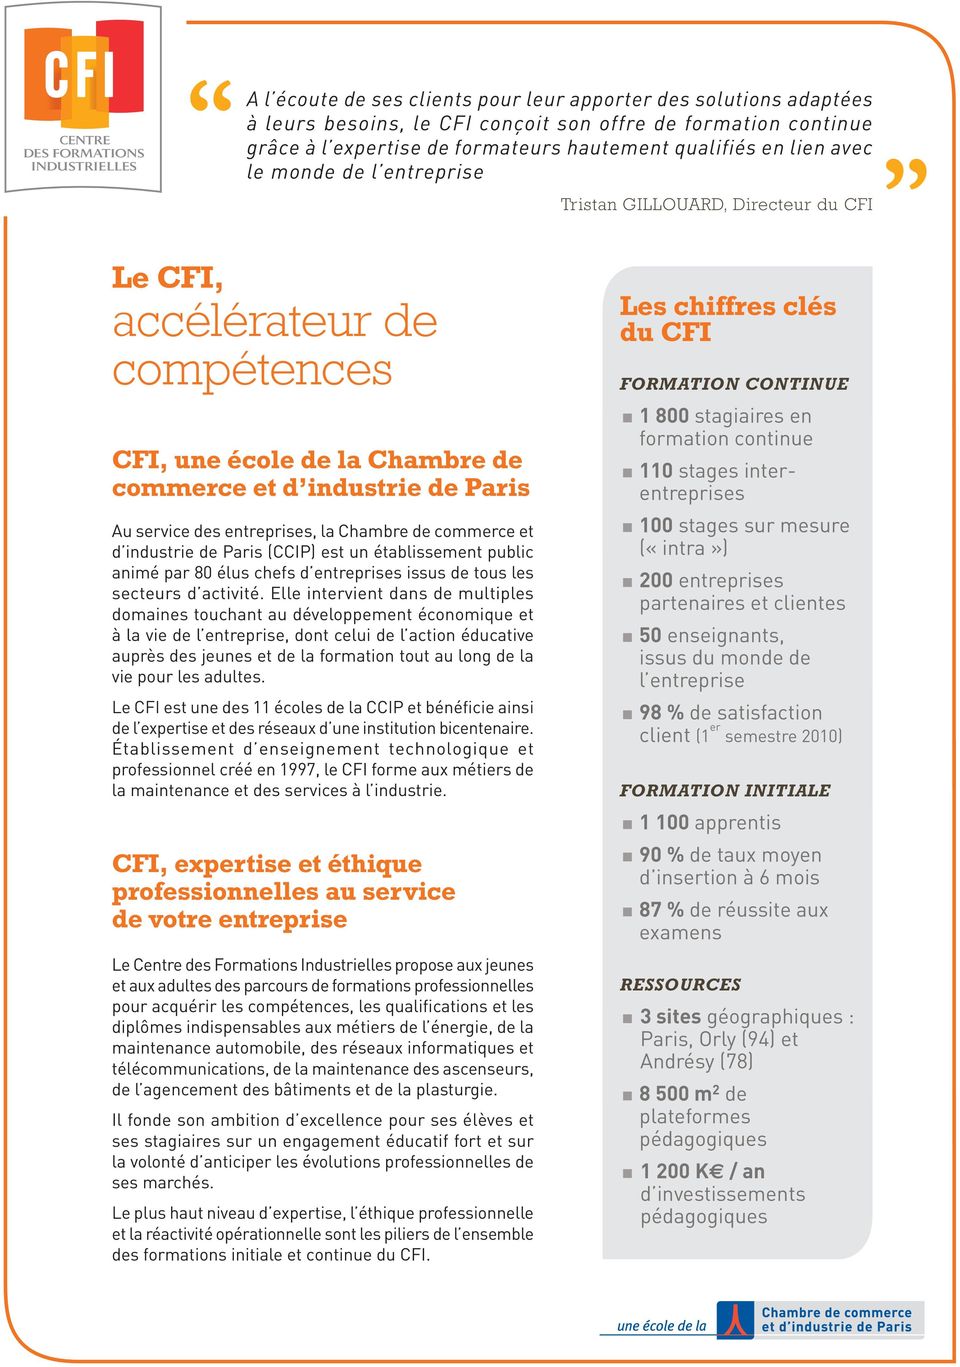 Chambre de commerce et d industrie de Paris (CCIP) est un établissement public animé par 80 élus chefs d entreprises issus de tous les secteurs d activité.